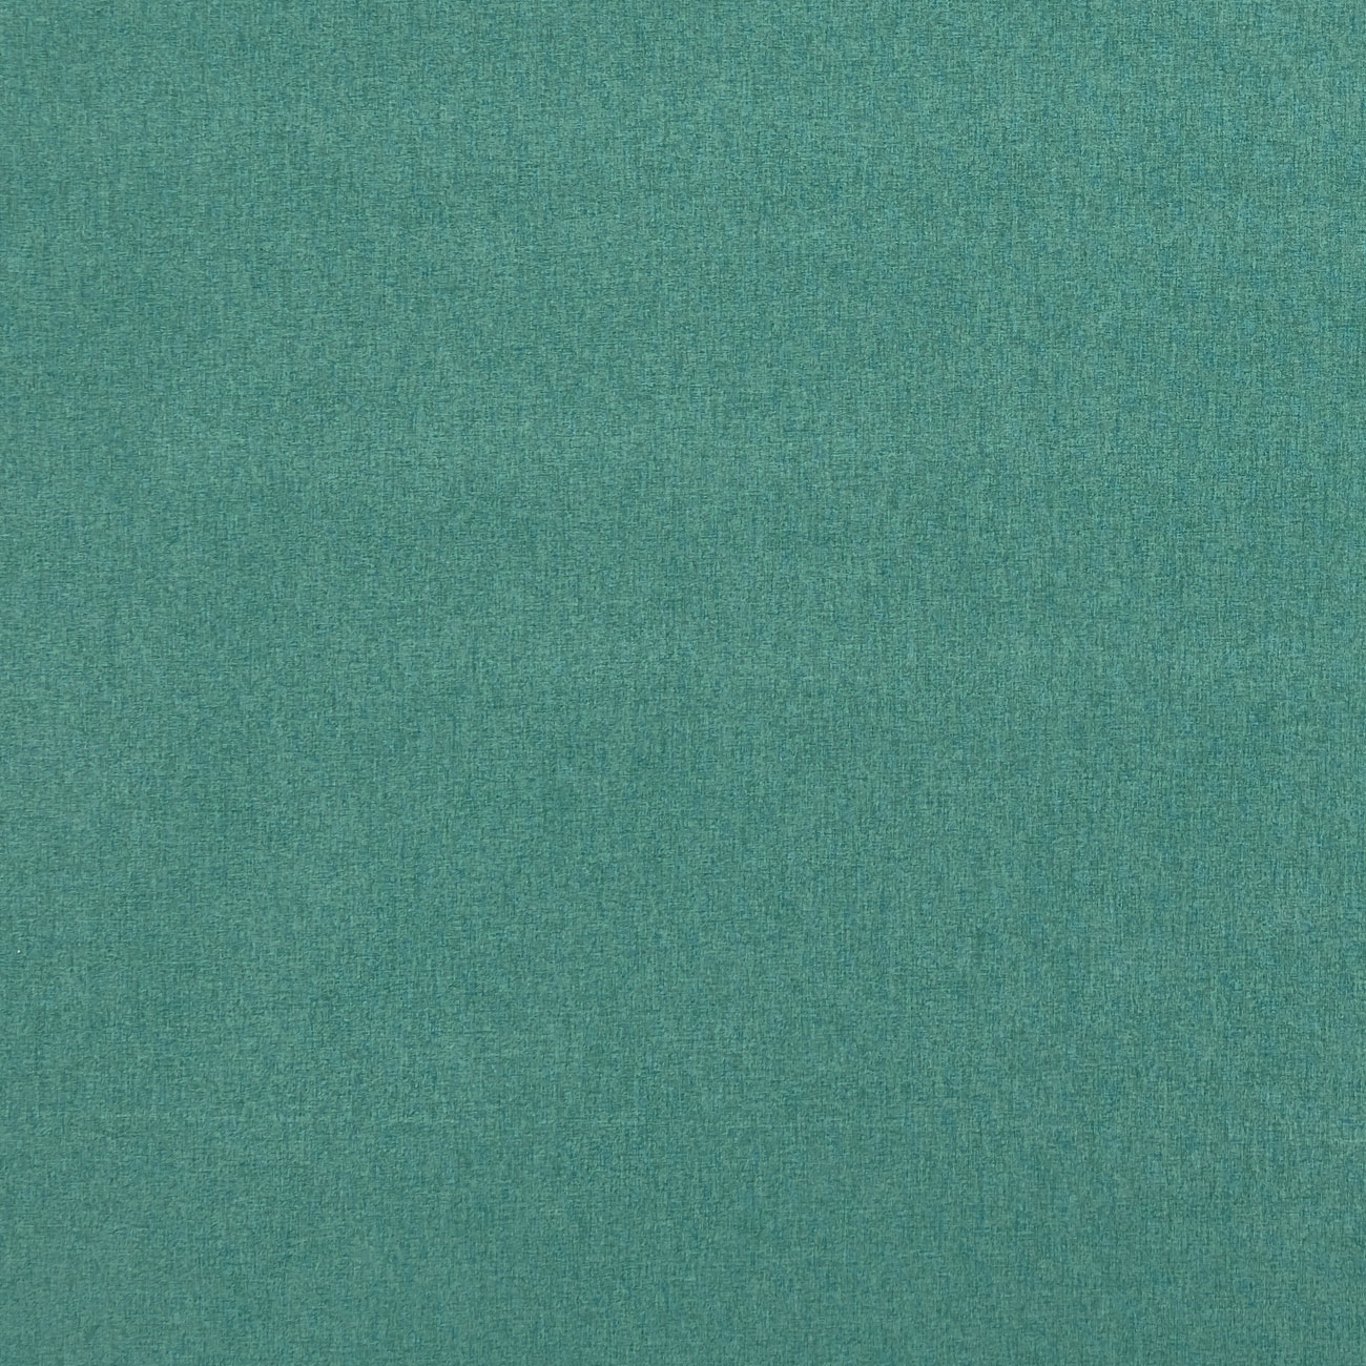 Highlander Emerald Fabric by CNC